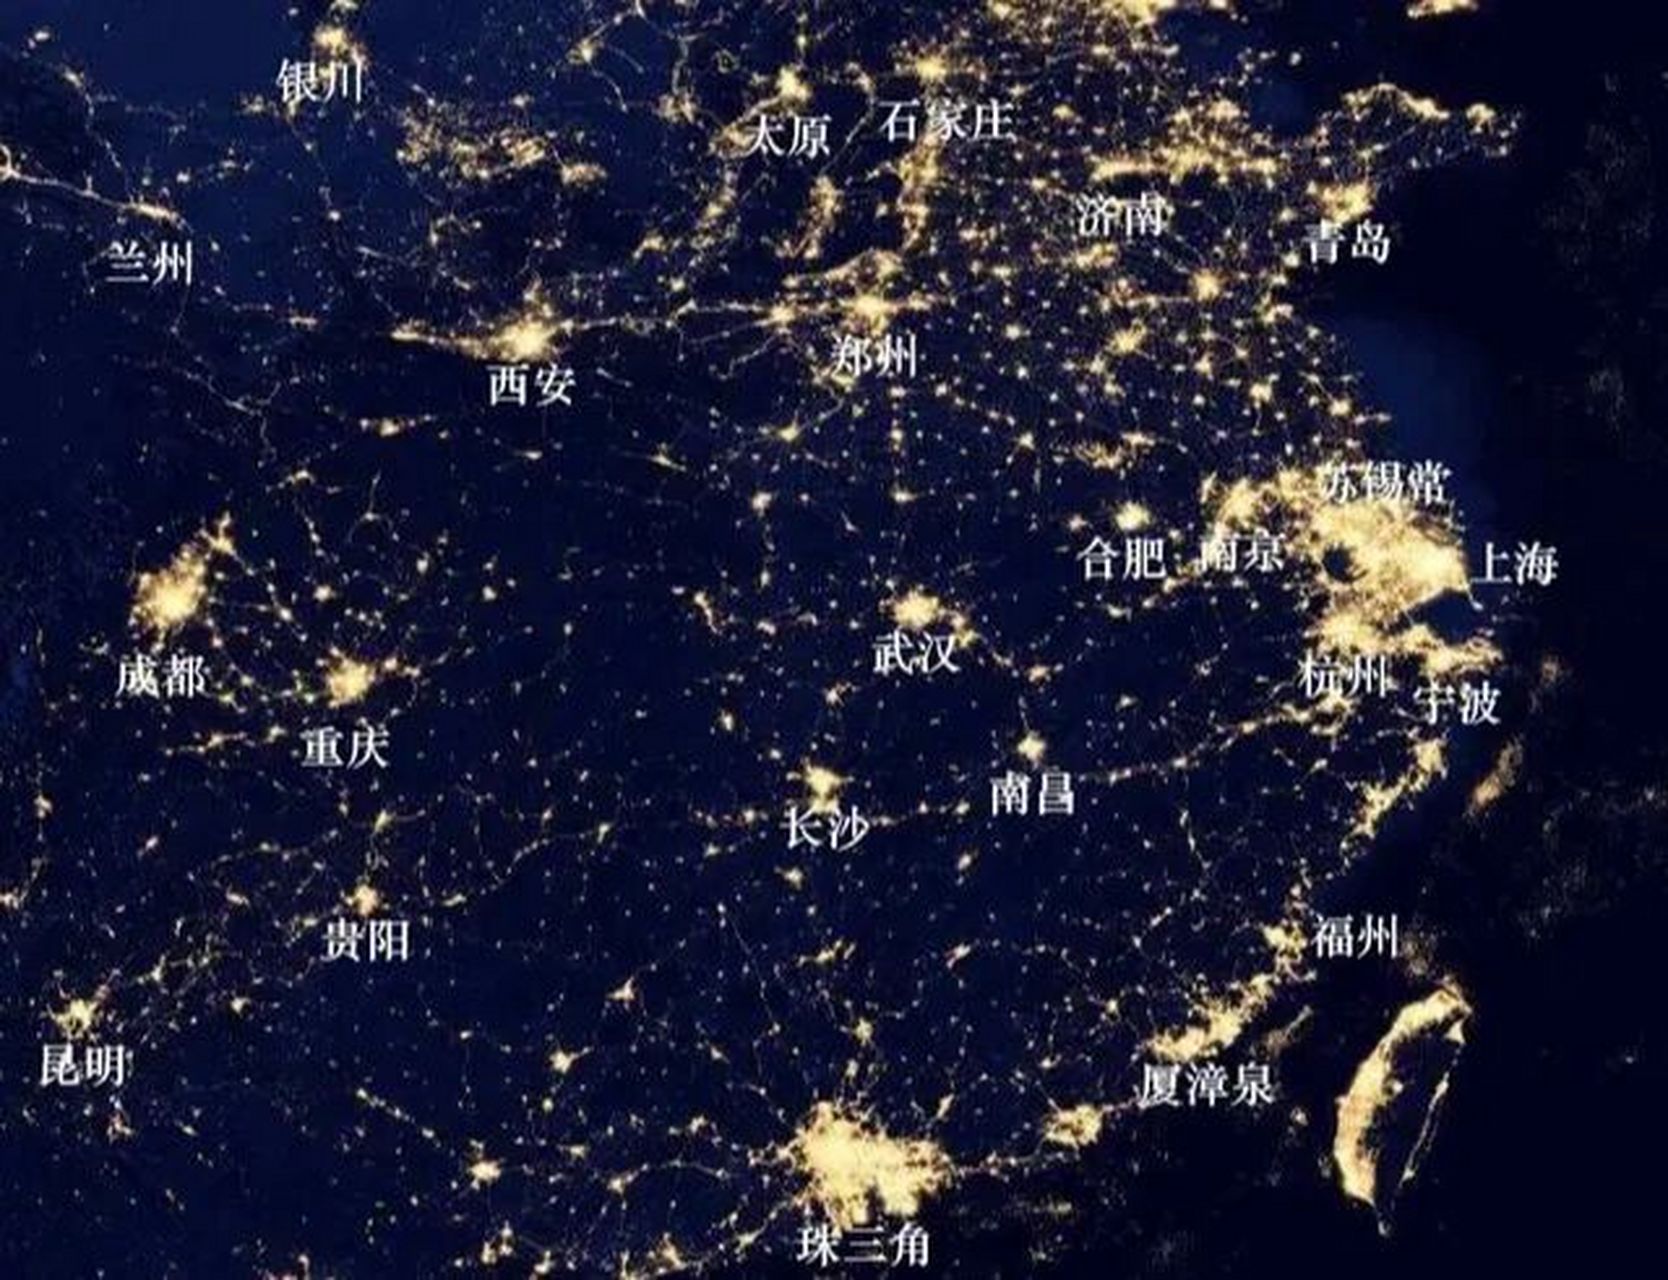 中国各城市夜景卫星图图片